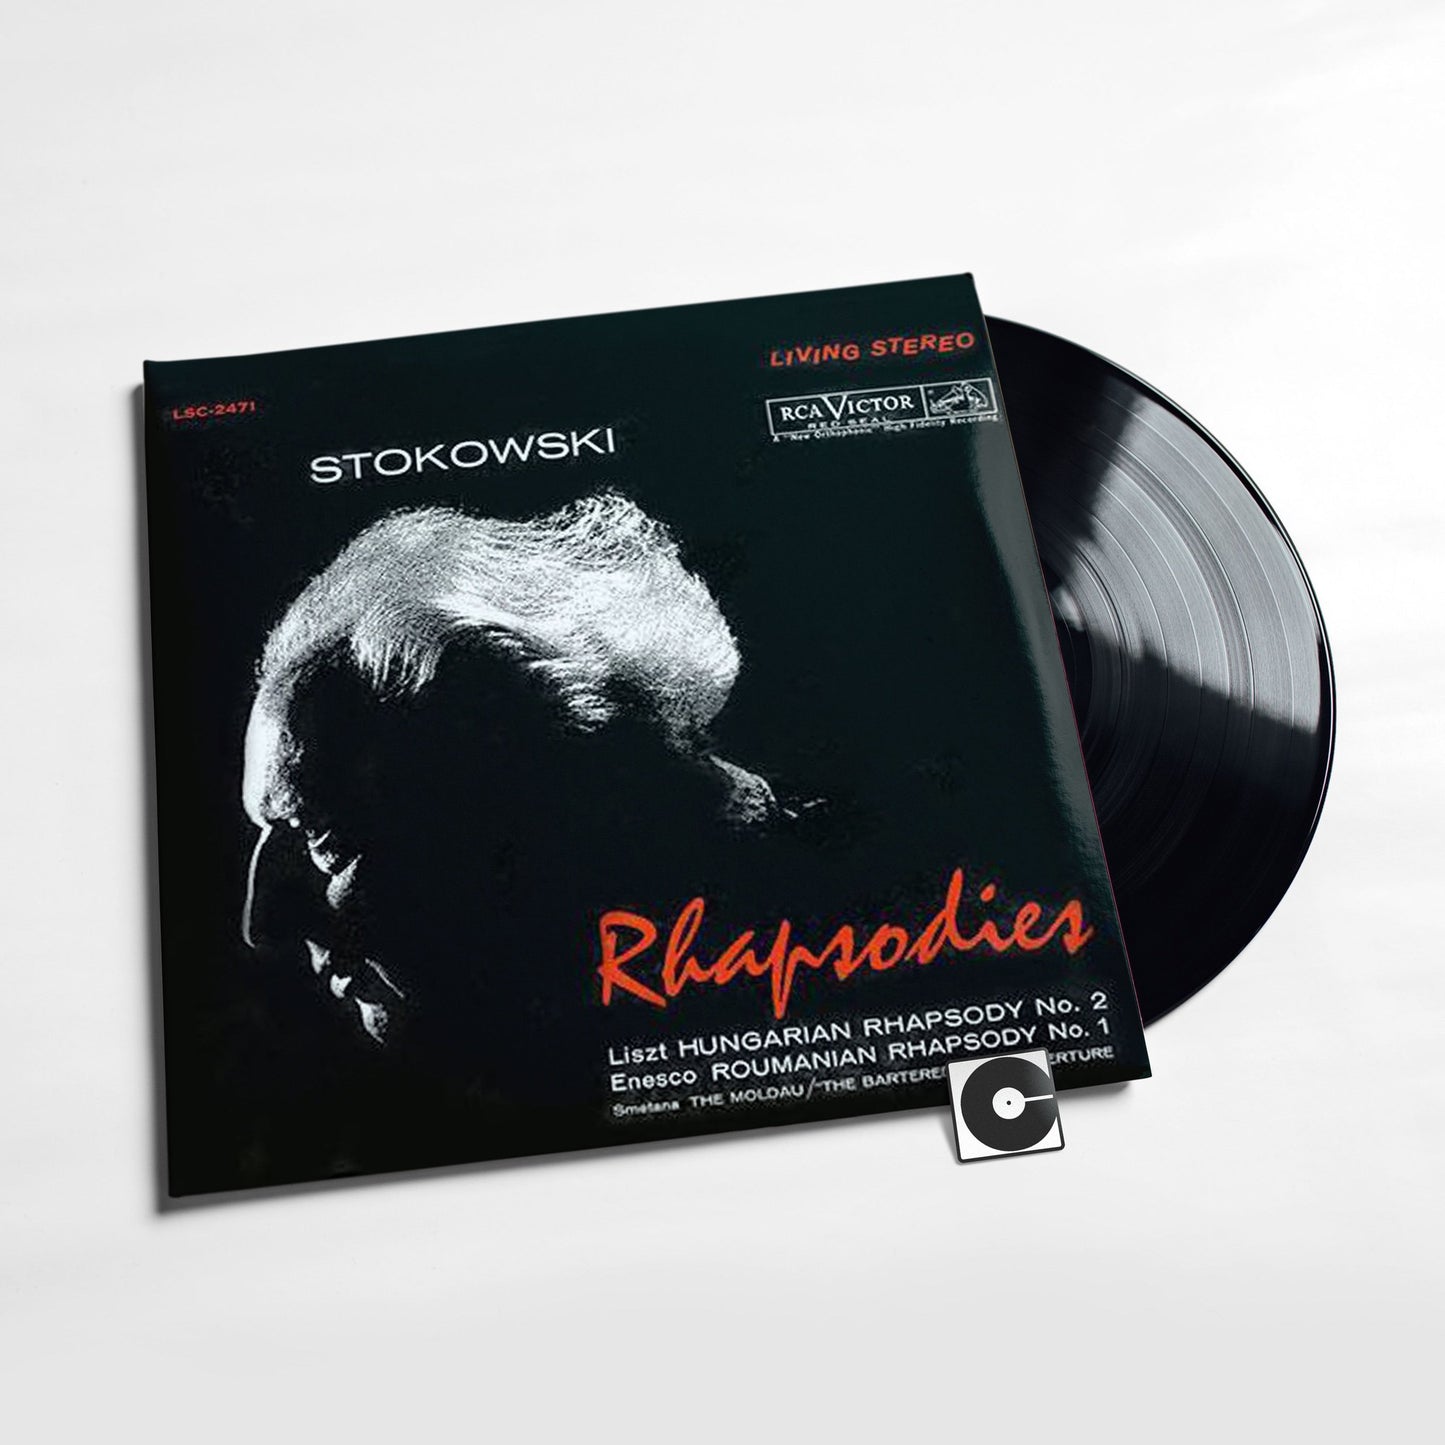 Leopold Stokowski - "Rhapsodies" Analogue Productions